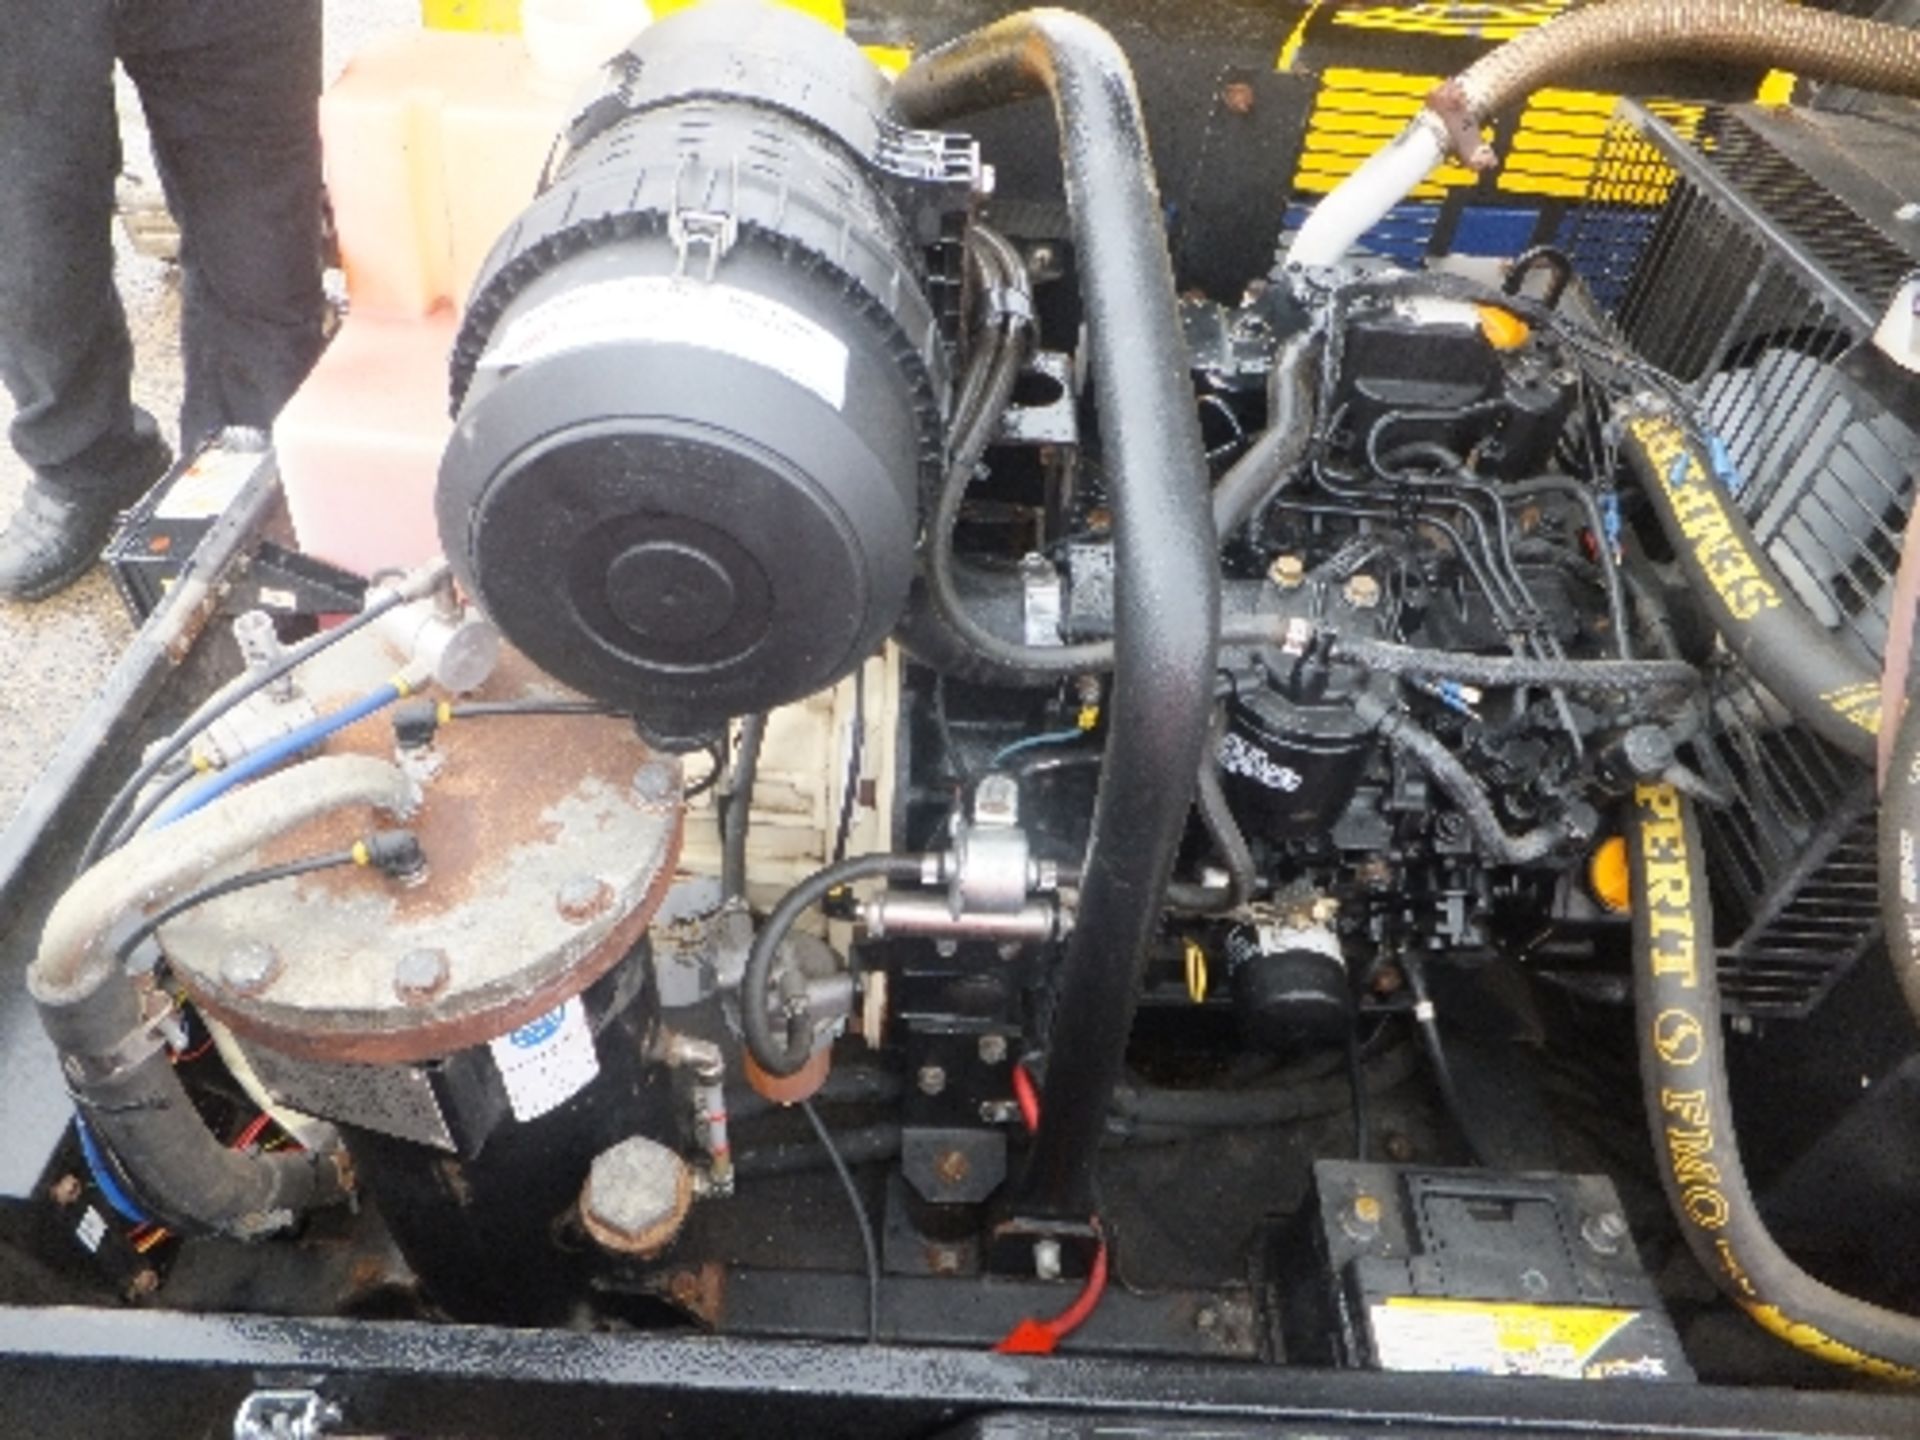 Doosan 7/31e compressor (2011) No ignition switch  WLCA12322038 - Image 2 of 2